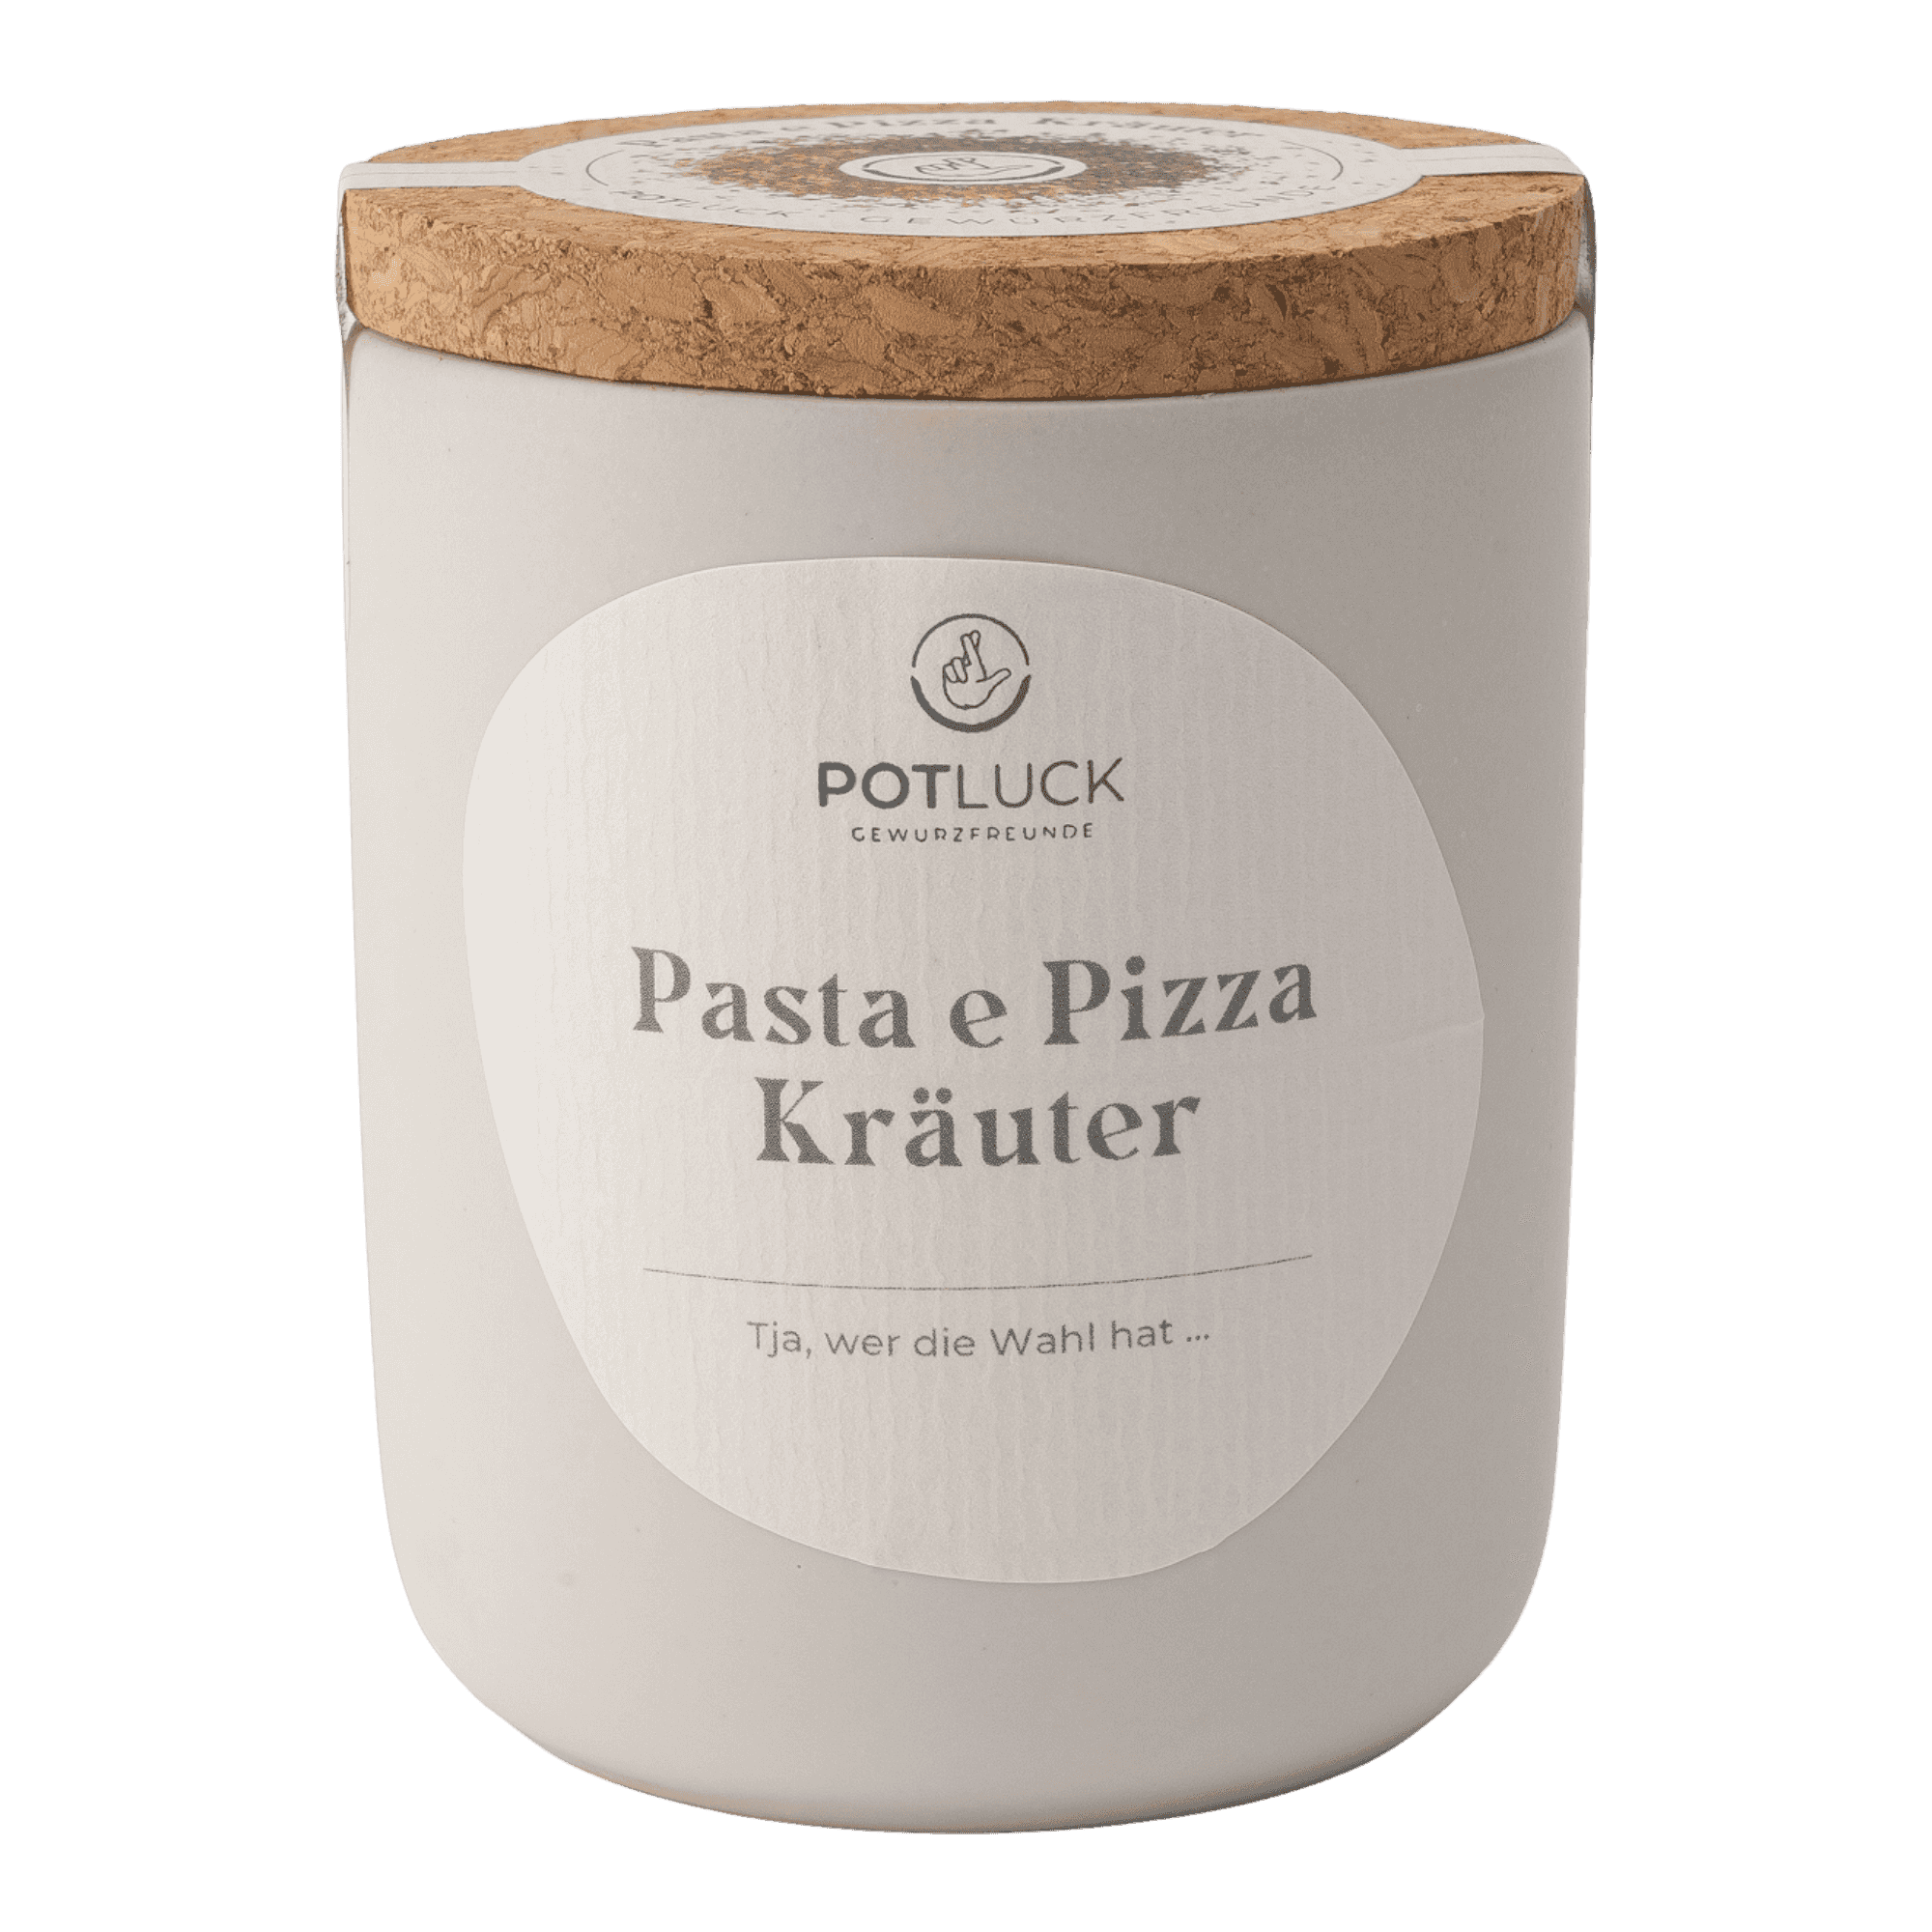 Pasta e Pizza Kräuter-Bild